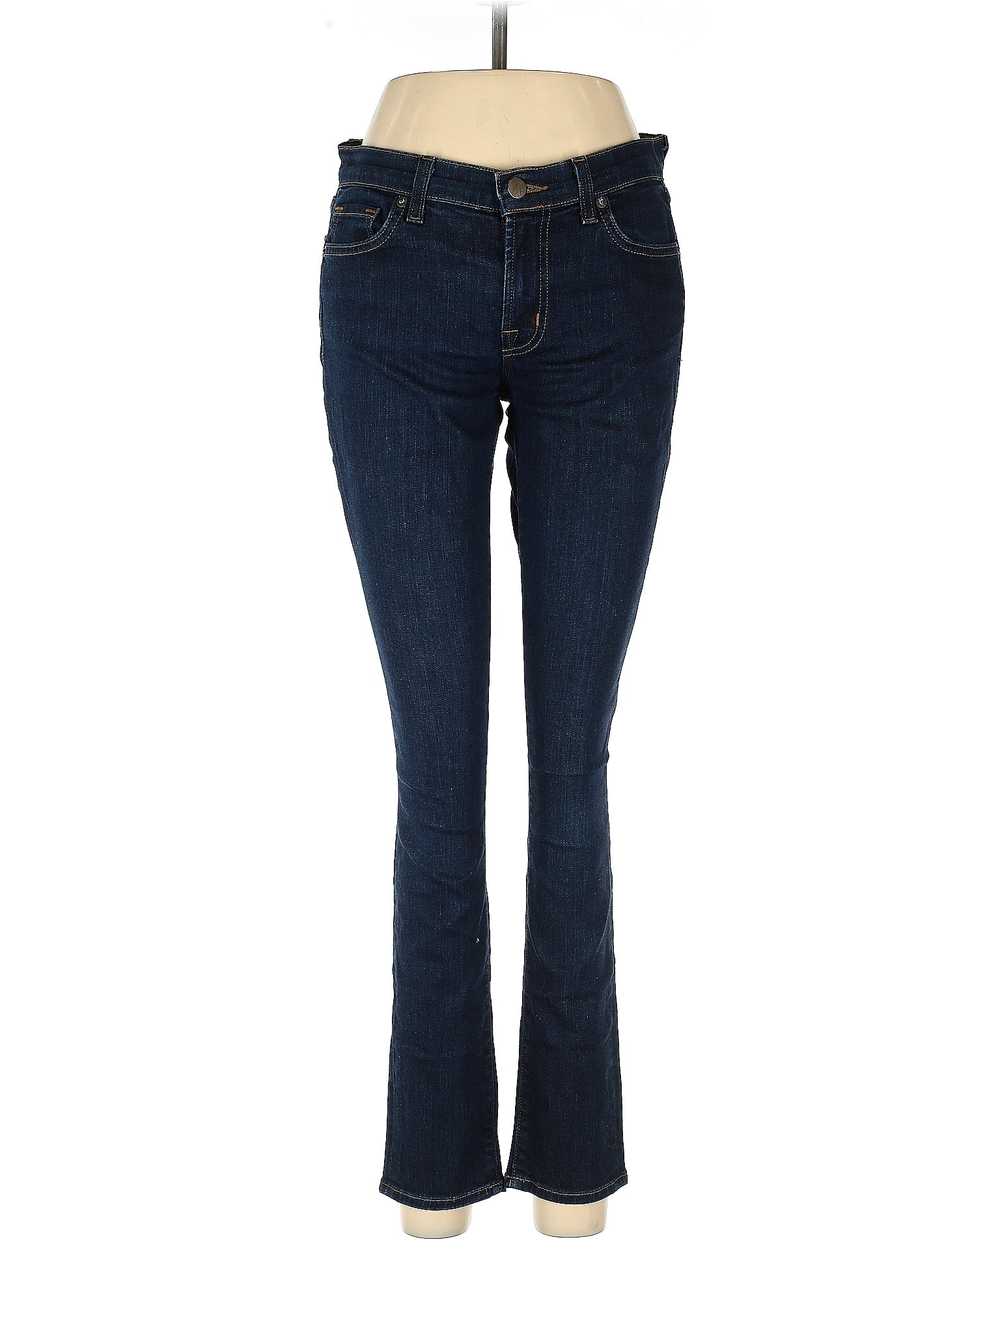 J Brand Women Blue Jeans 27W - image 1